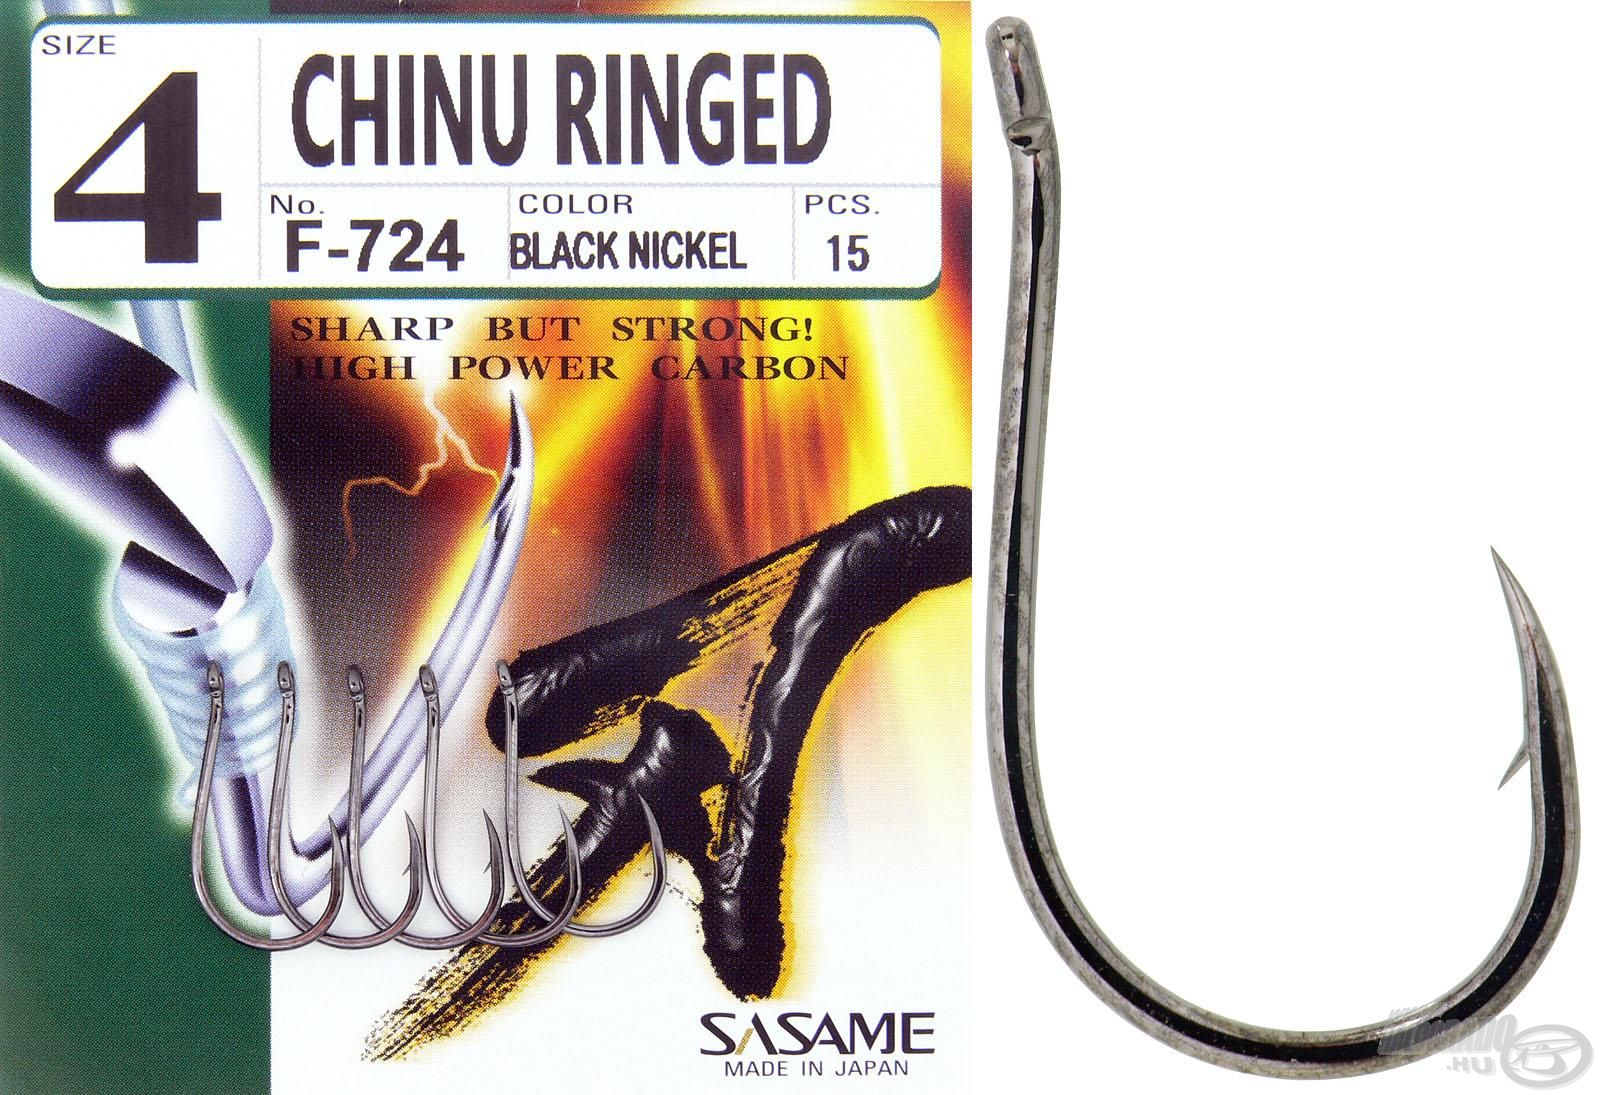 A Chinu elérhető füles kivitelben is, így fűzött csalikkal is használható